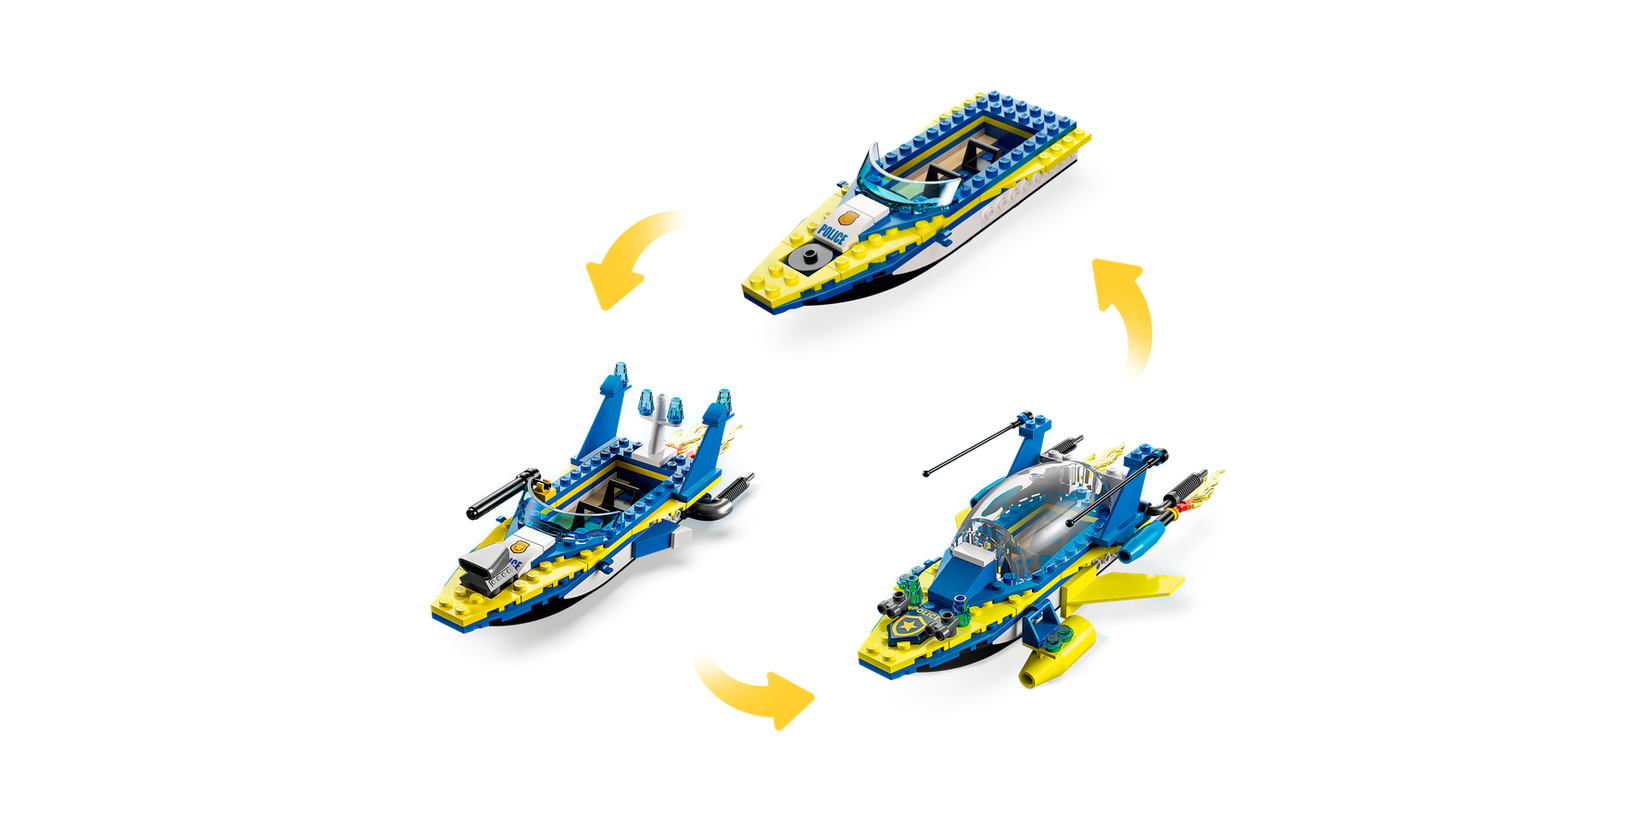 Lego *****Lego 60355 City - Les missions d'enquête de la police aquatique